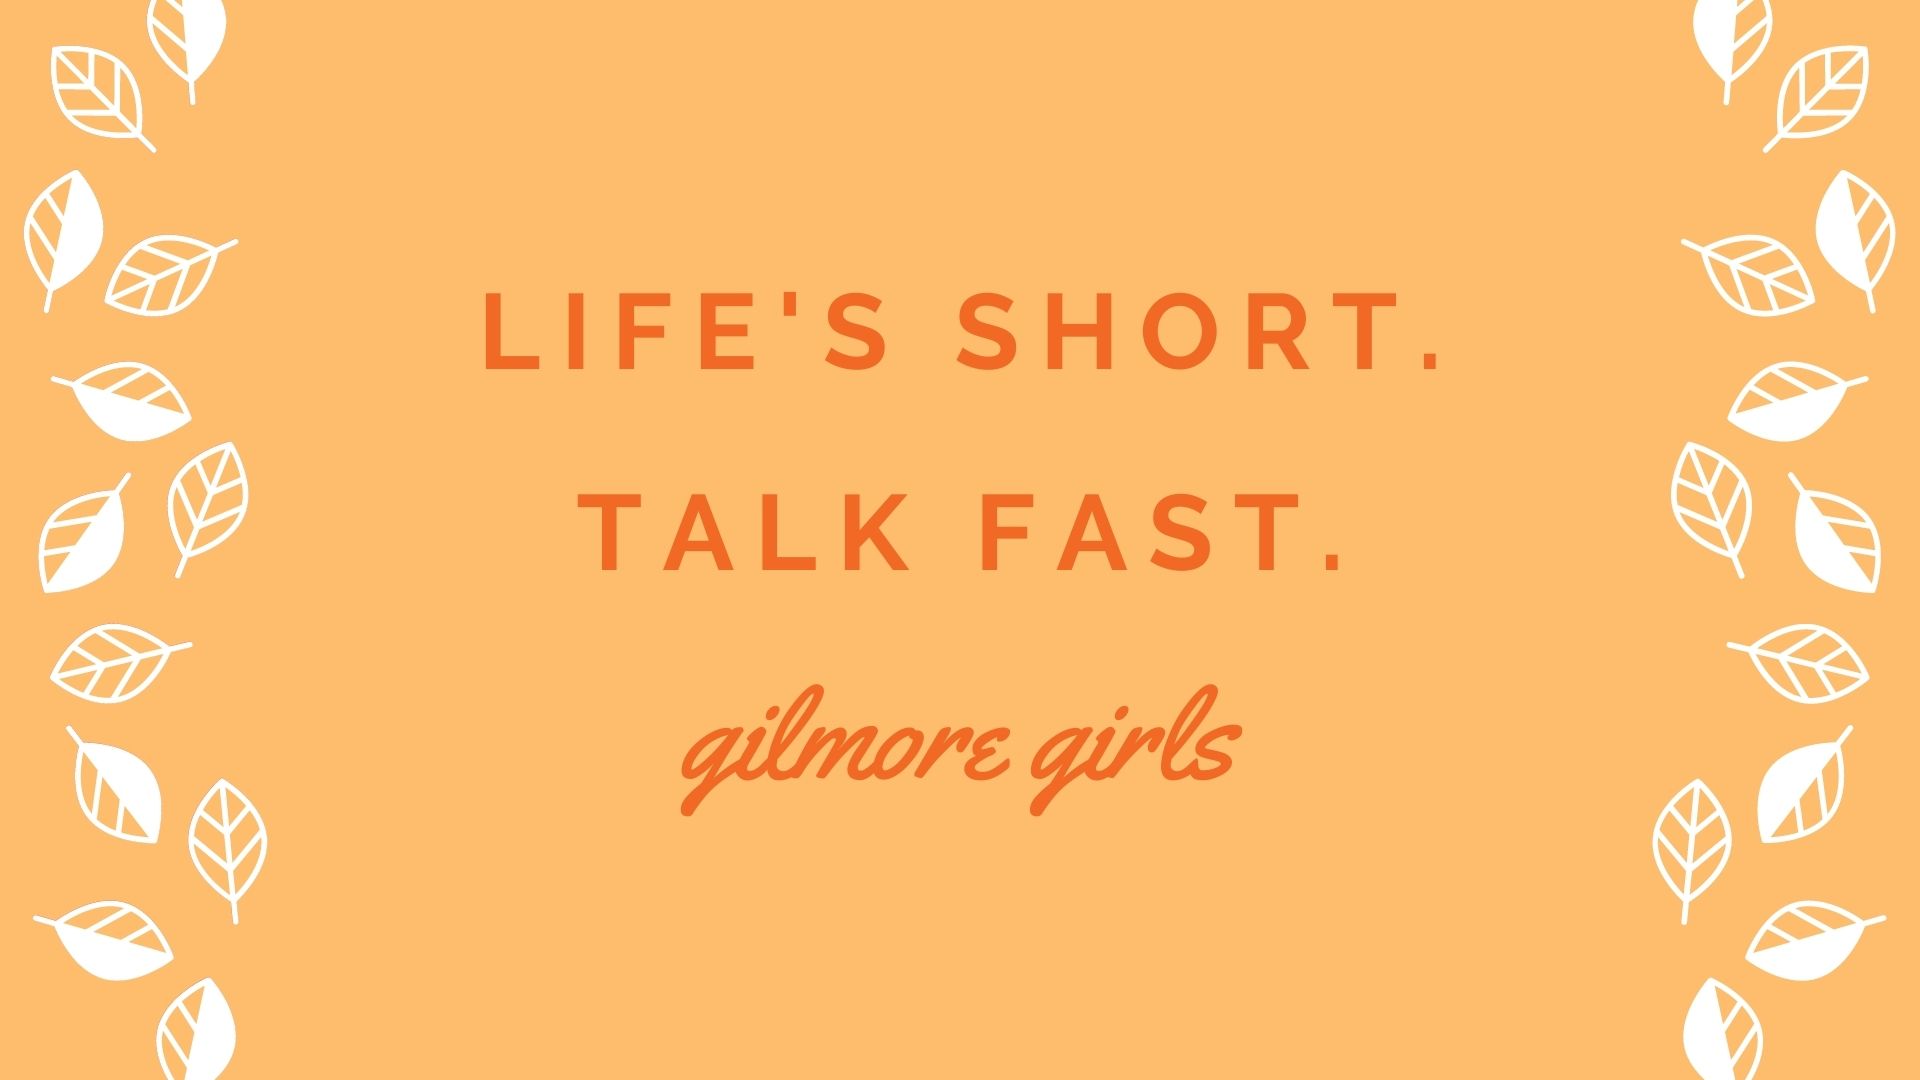 Gilmore Girls Wallpaper For Desktop Cell Phone The Literary